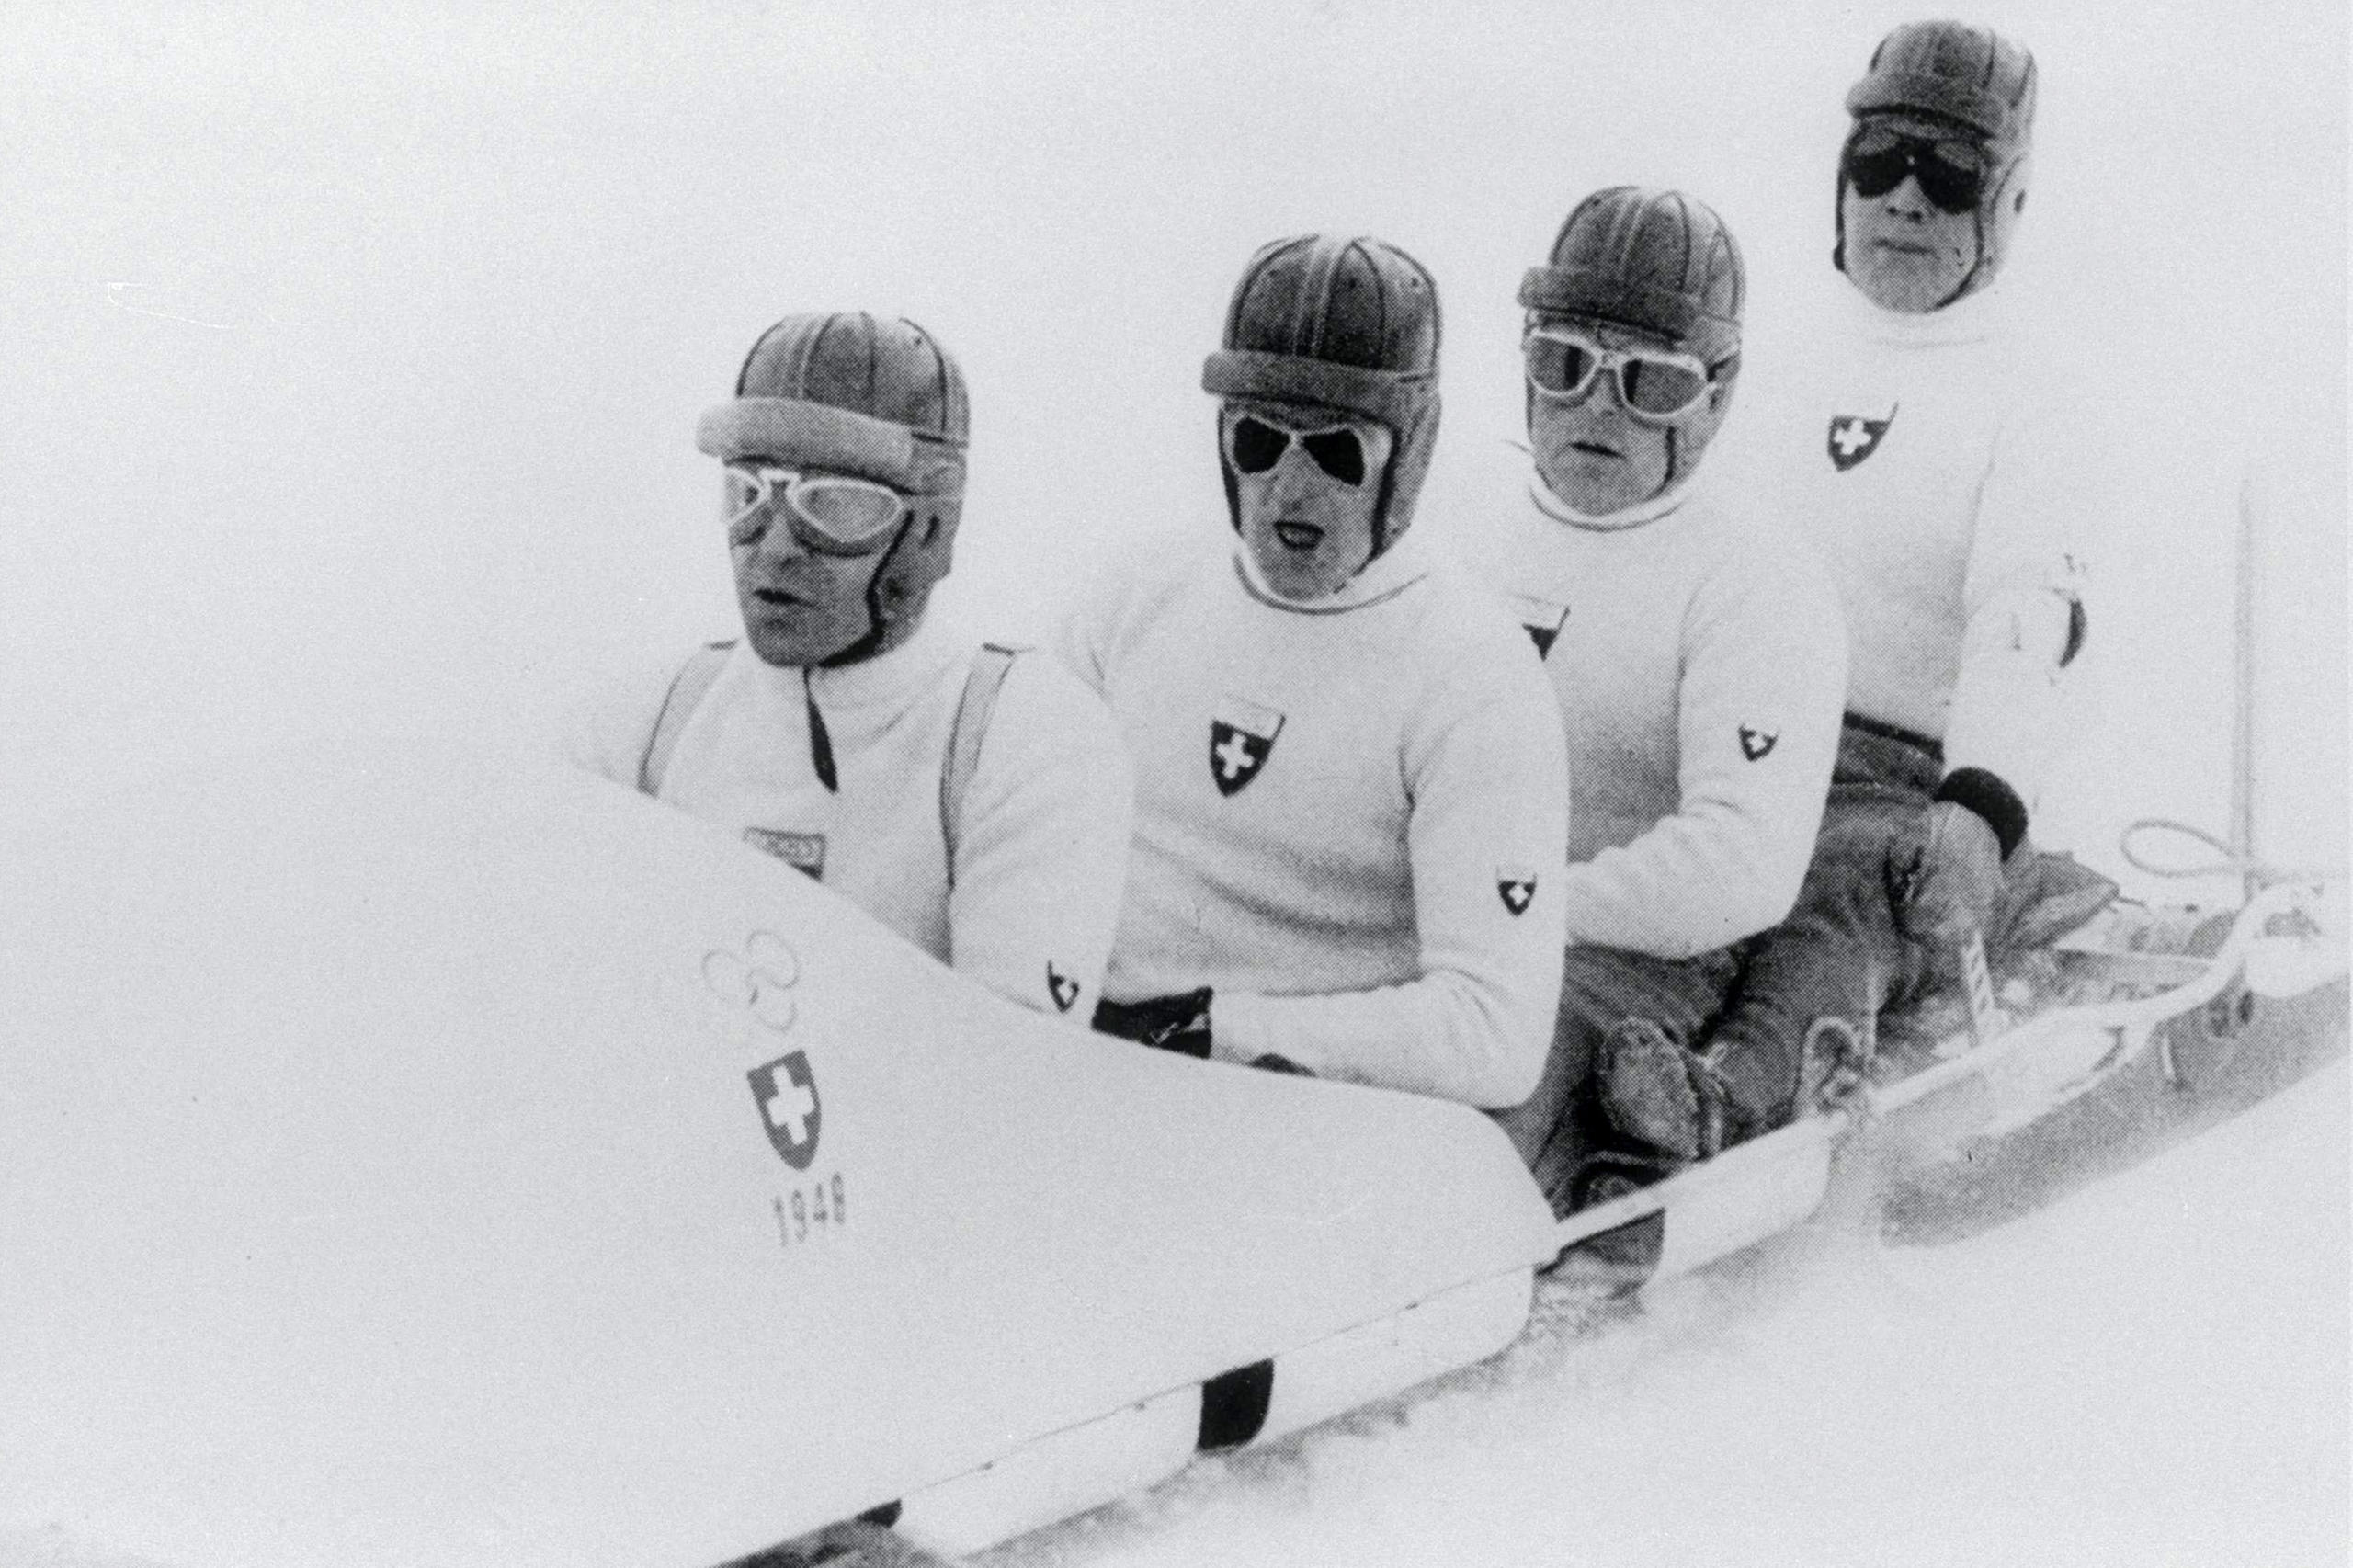 Swiss Bobsleigh team.